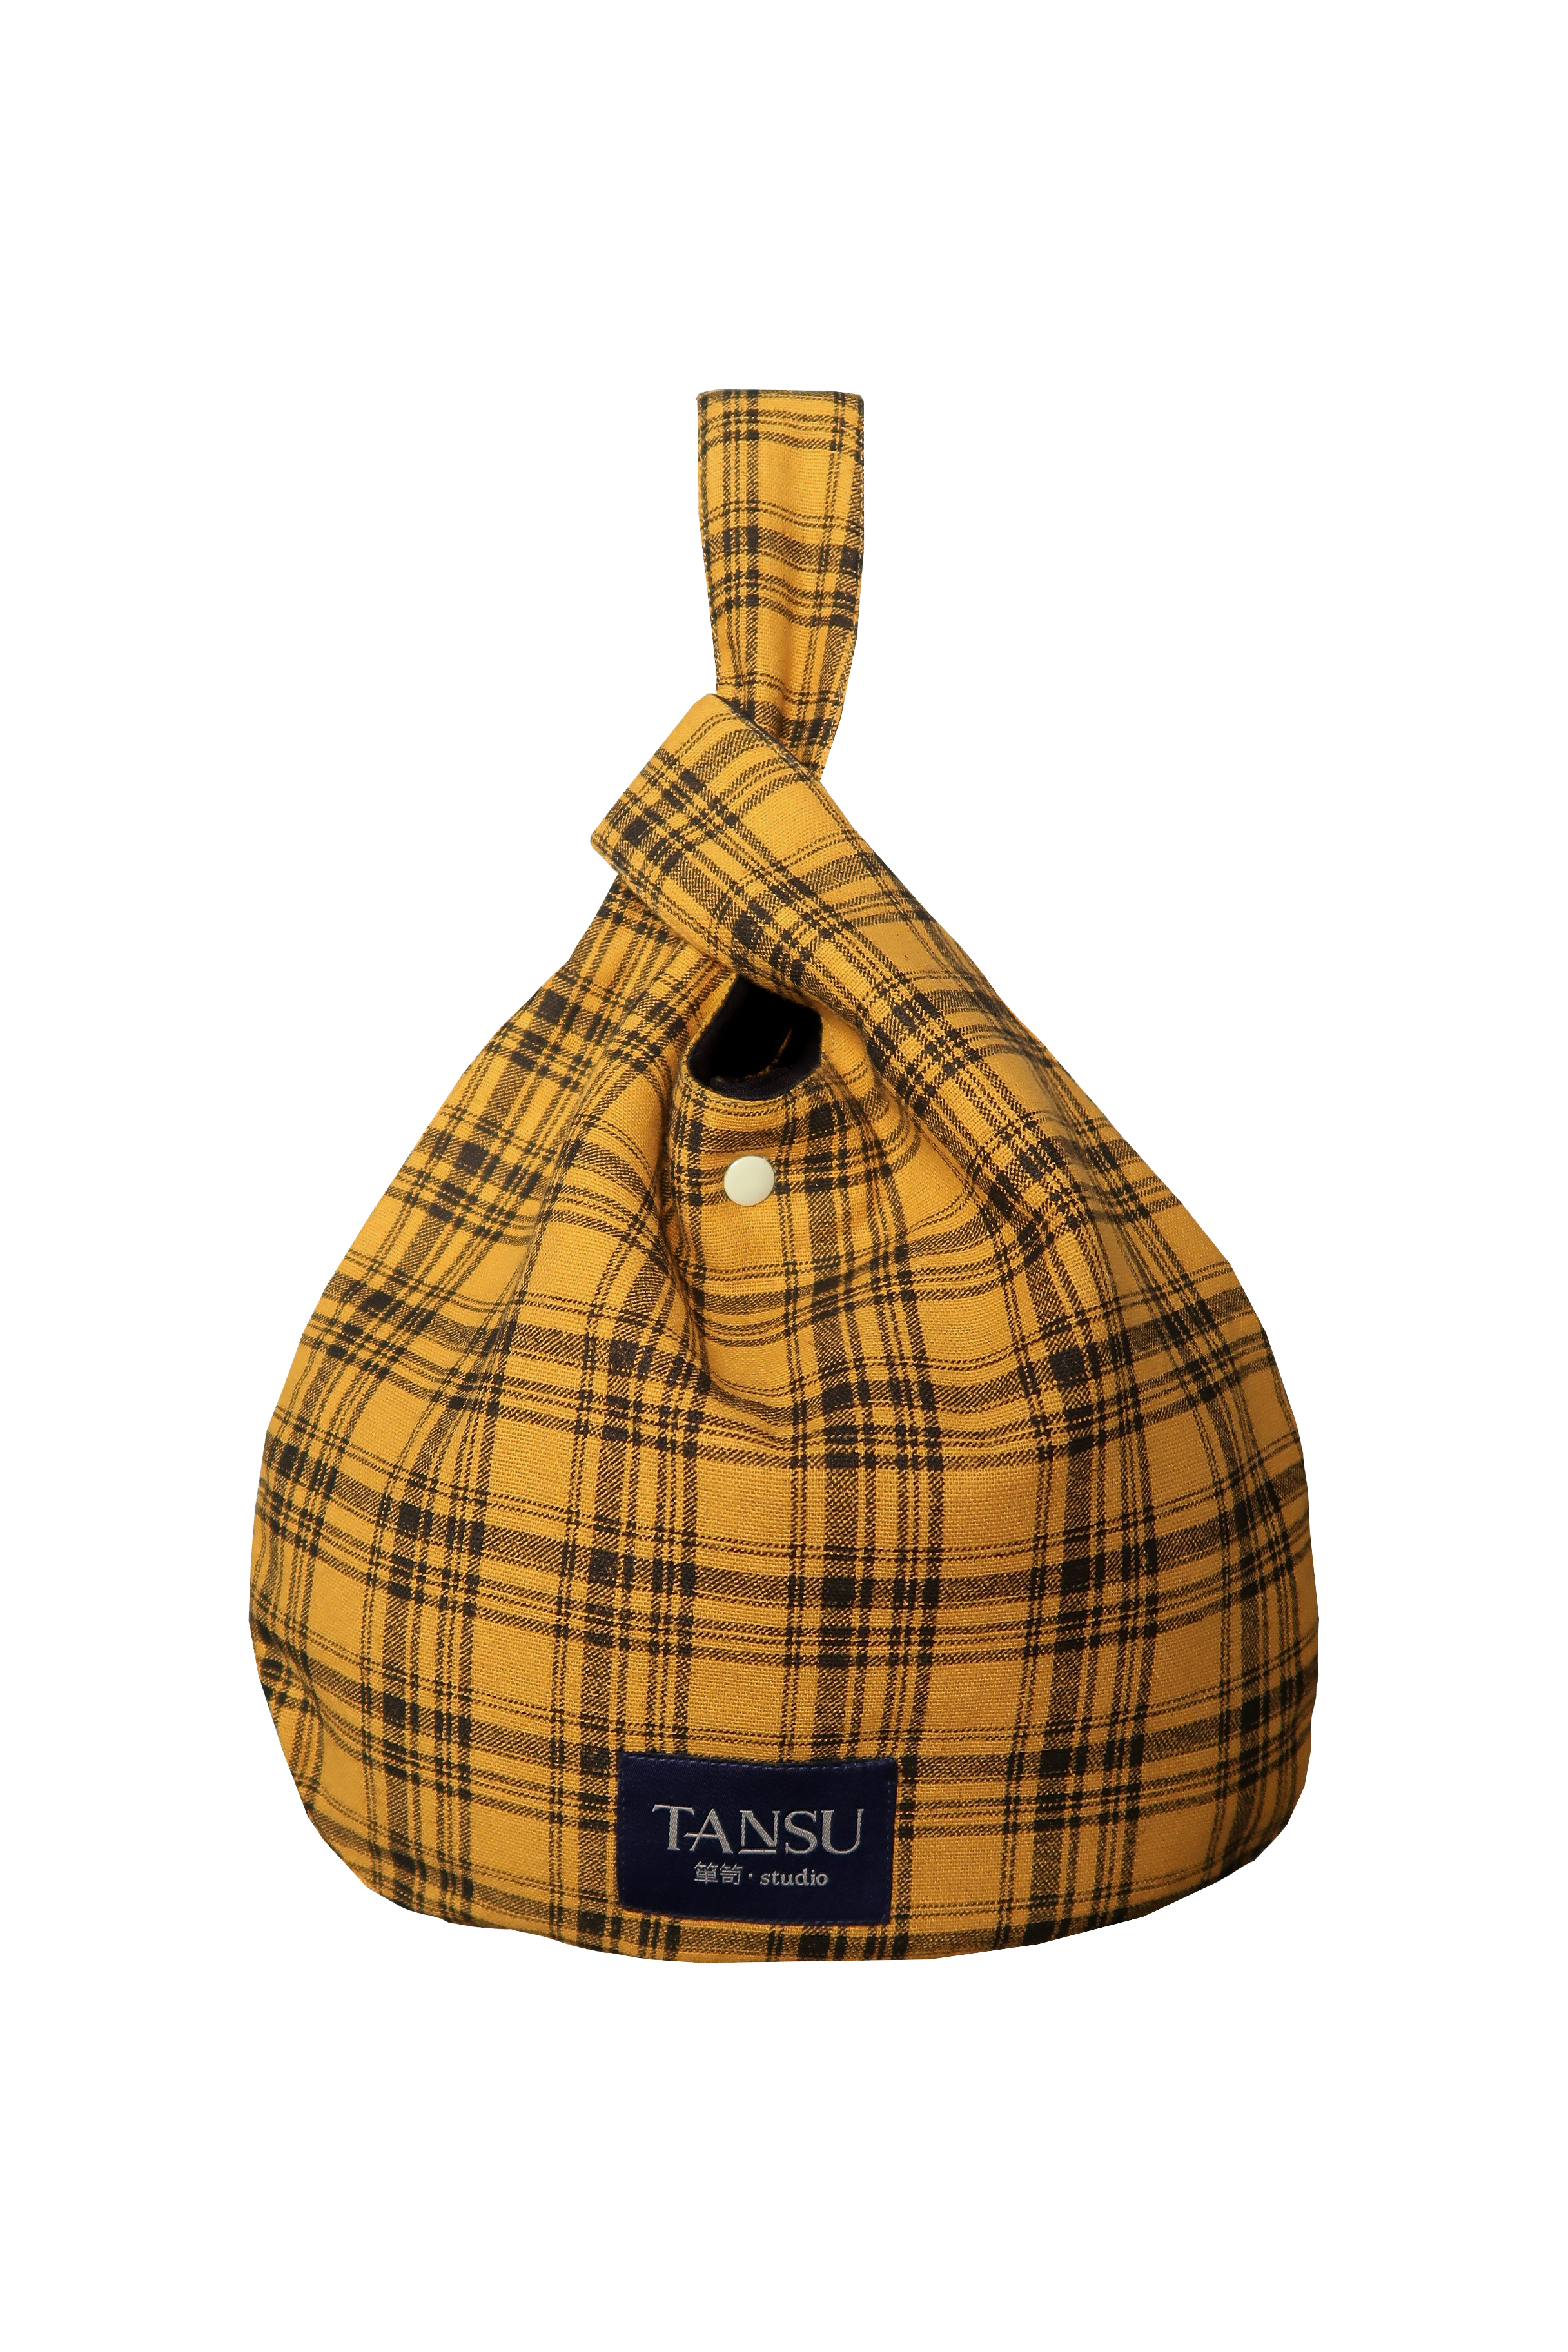 TANSU - Handbag Rw Yello X